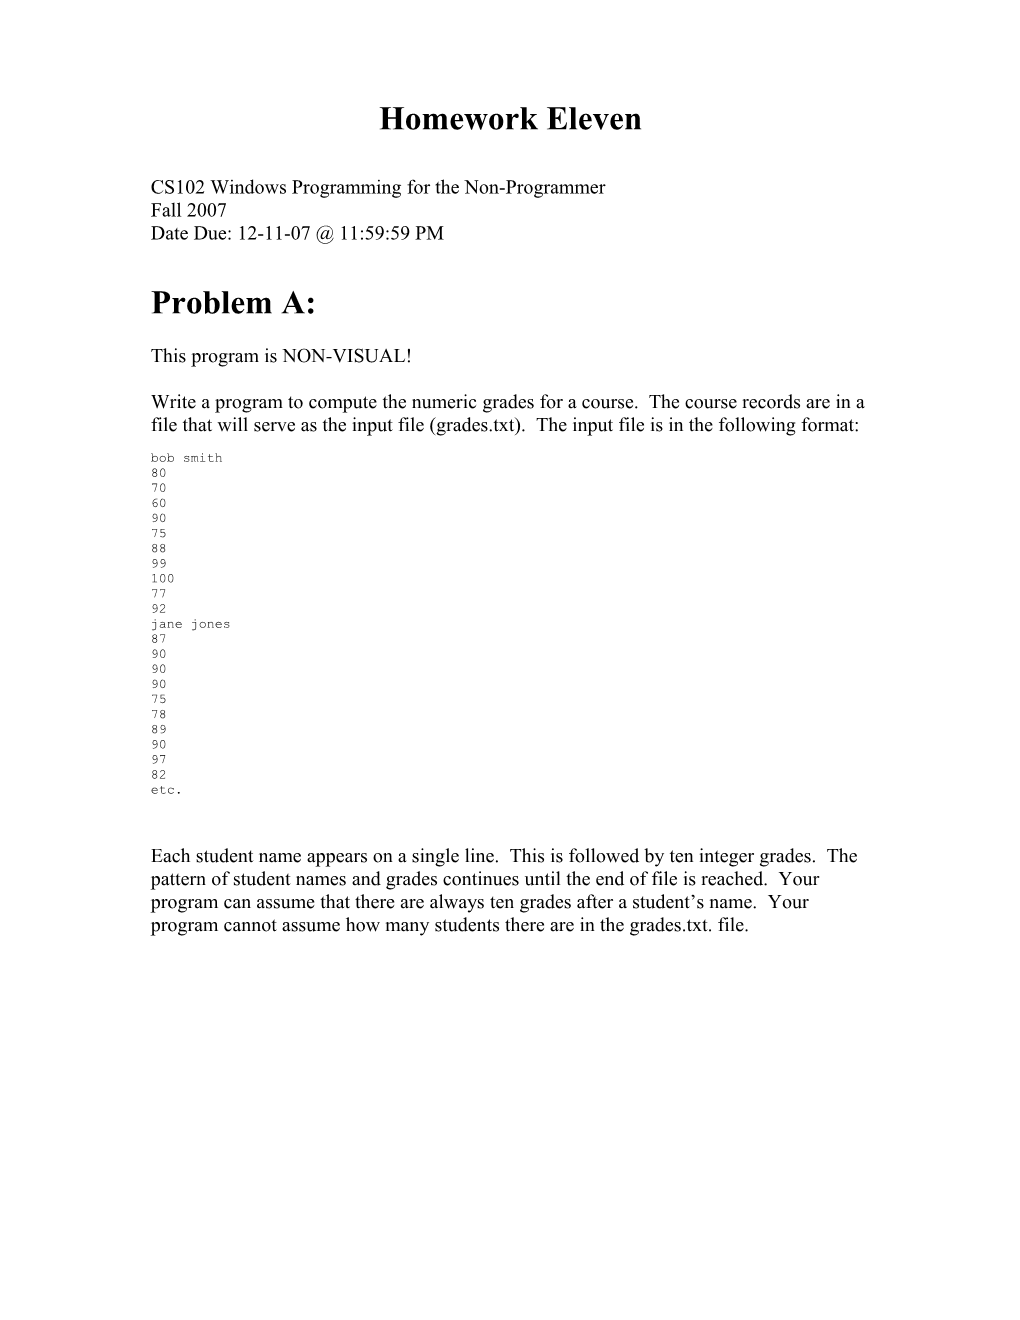 CS102 Windows Programming for the Non-Programmer